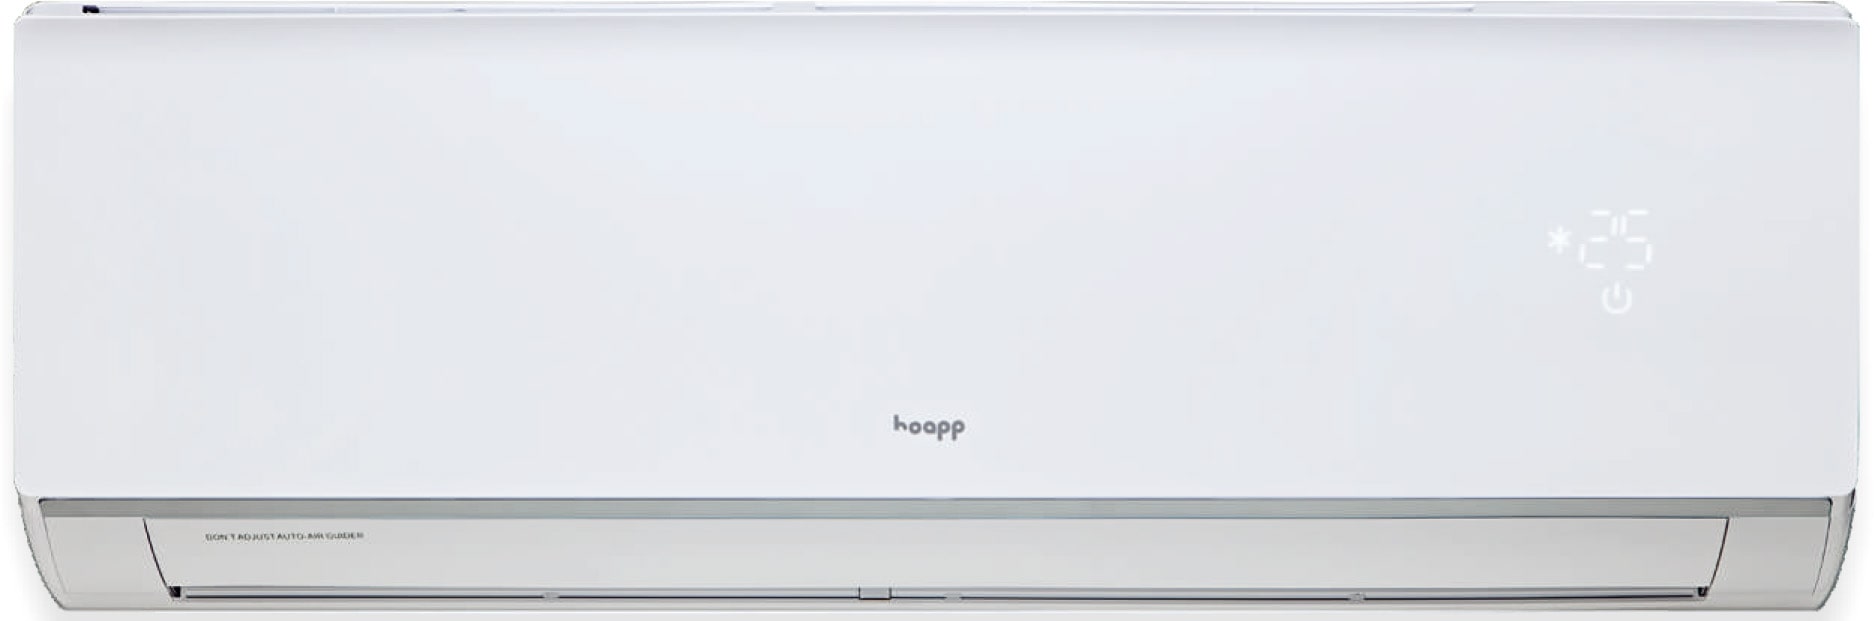 Hoapp Light Inverter внутрішній блок